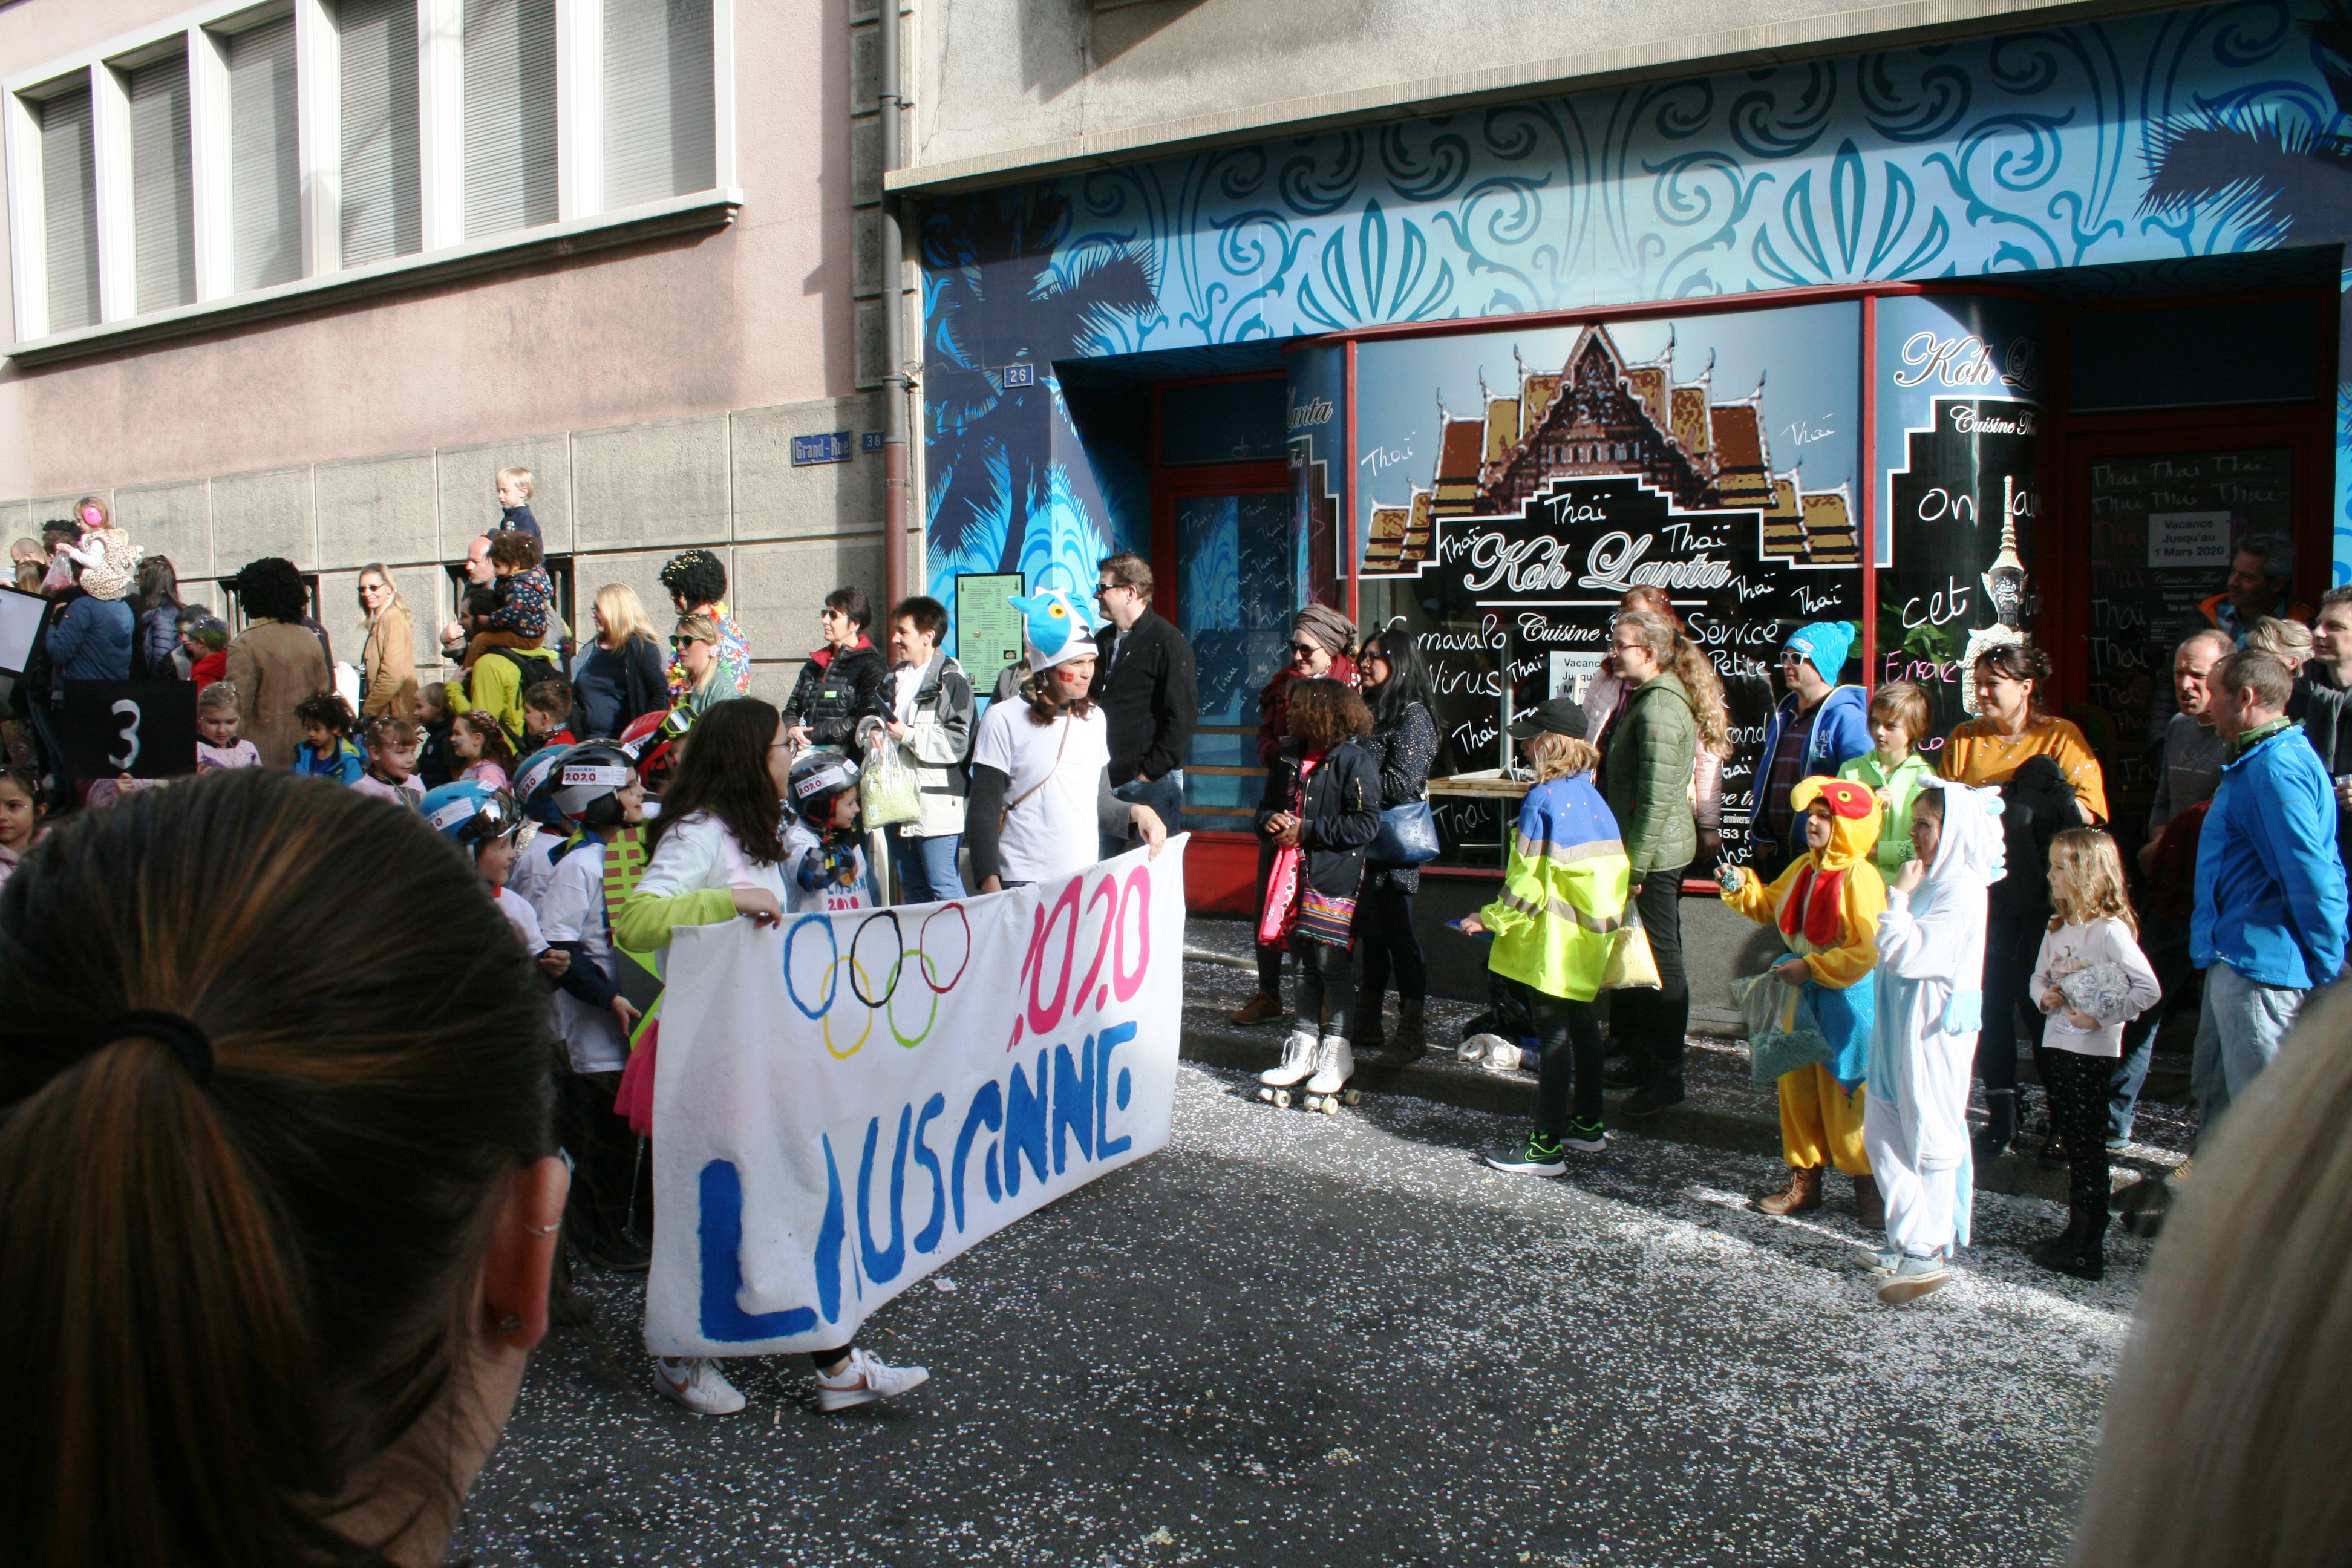 Dernier jour du carnaval de Châtel-St-Denis 